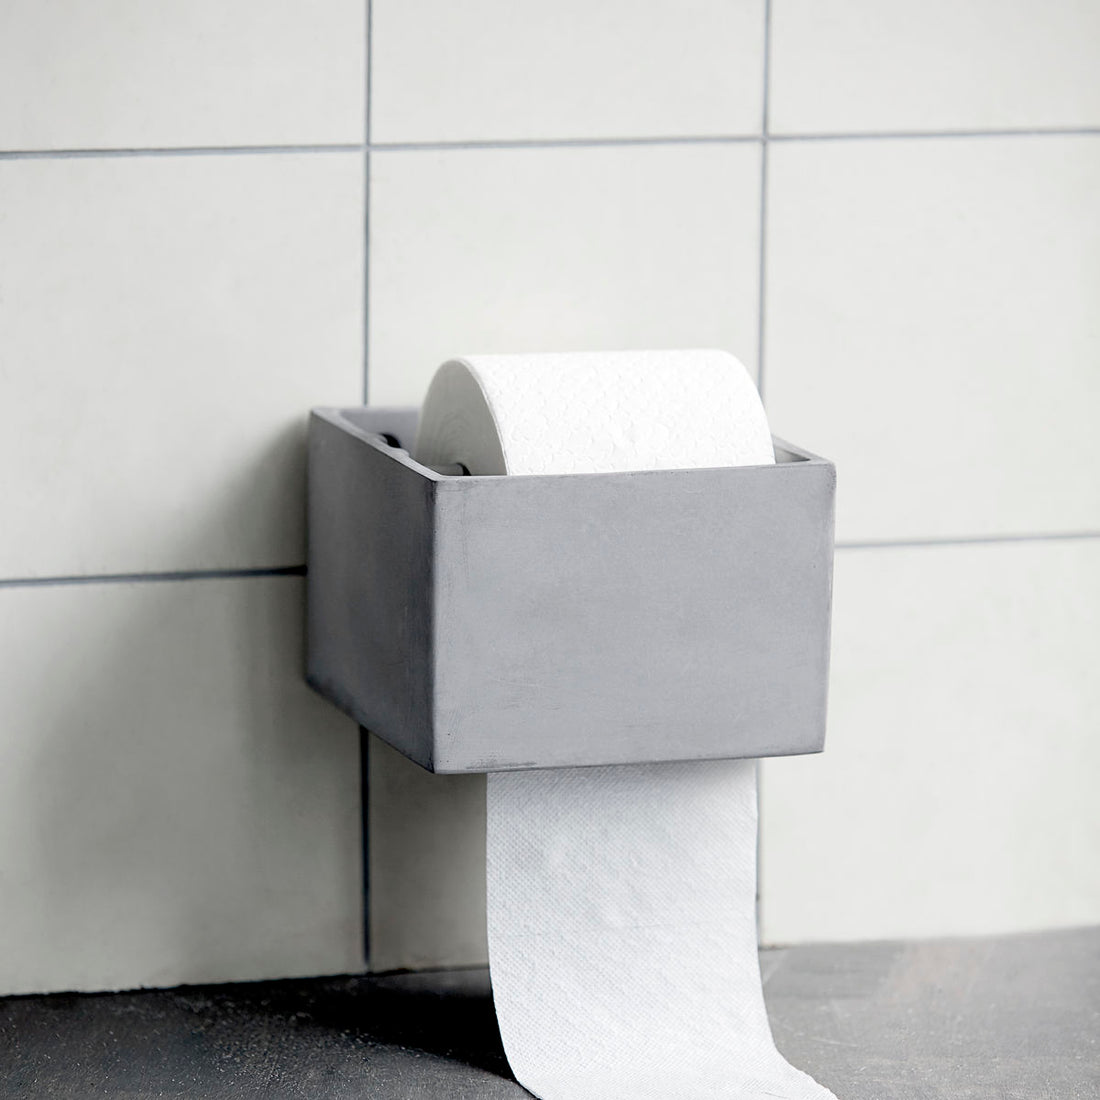 House Doctor-toalett papirholder, Cement-L: 15 cm, W: 14,5 cm, H: 10,5 cm